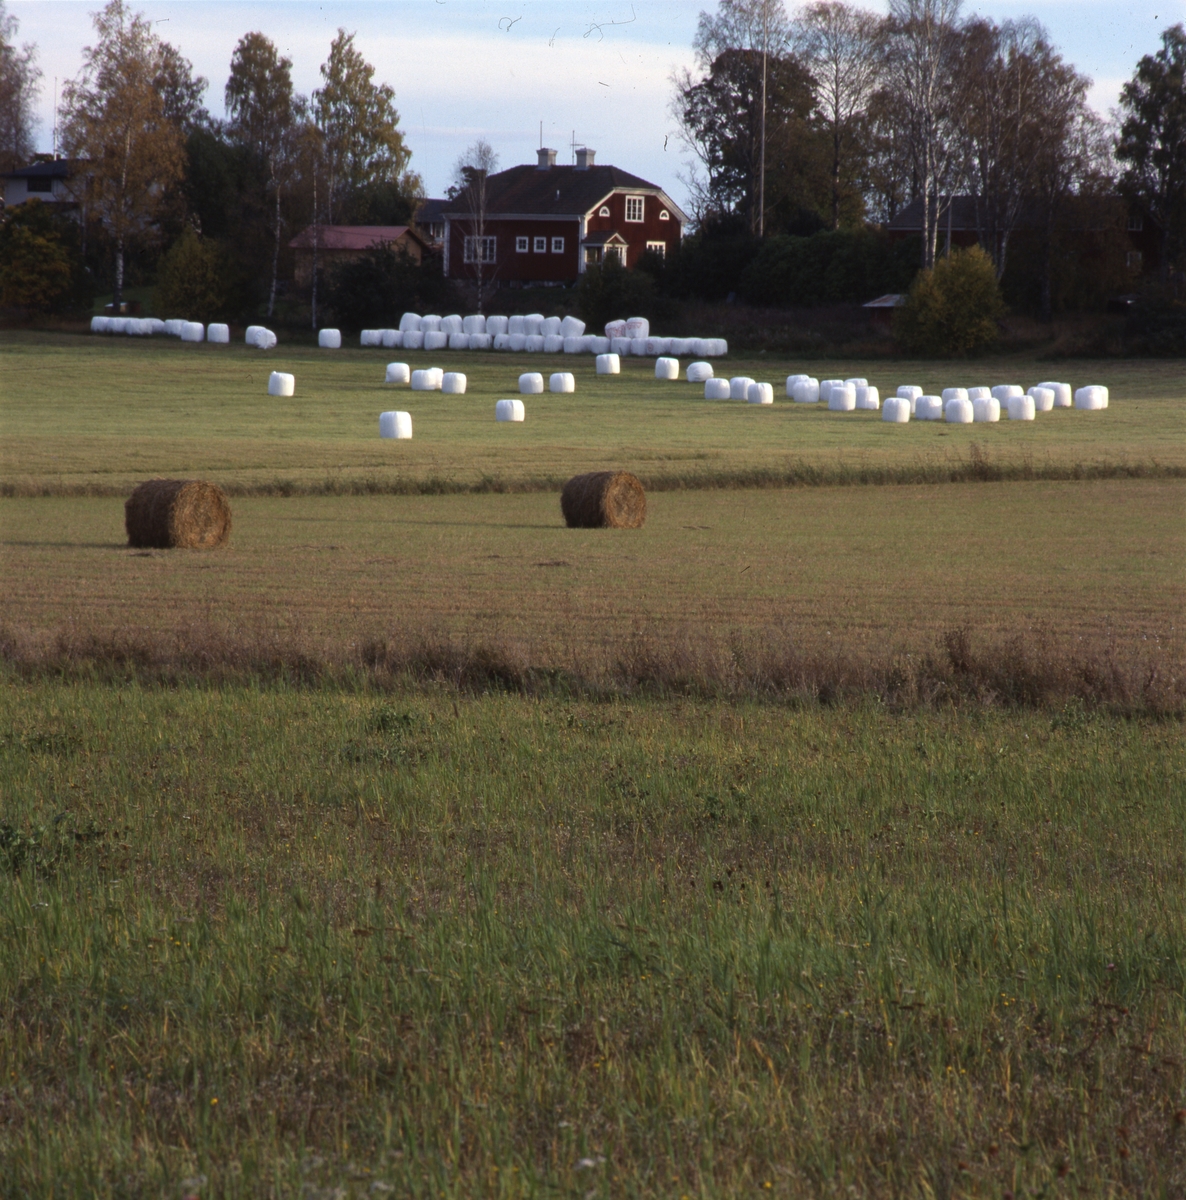 En åker med höbalar och vita ensilagebalar. I bakgrunden syns en gård omgiven av höstträd.